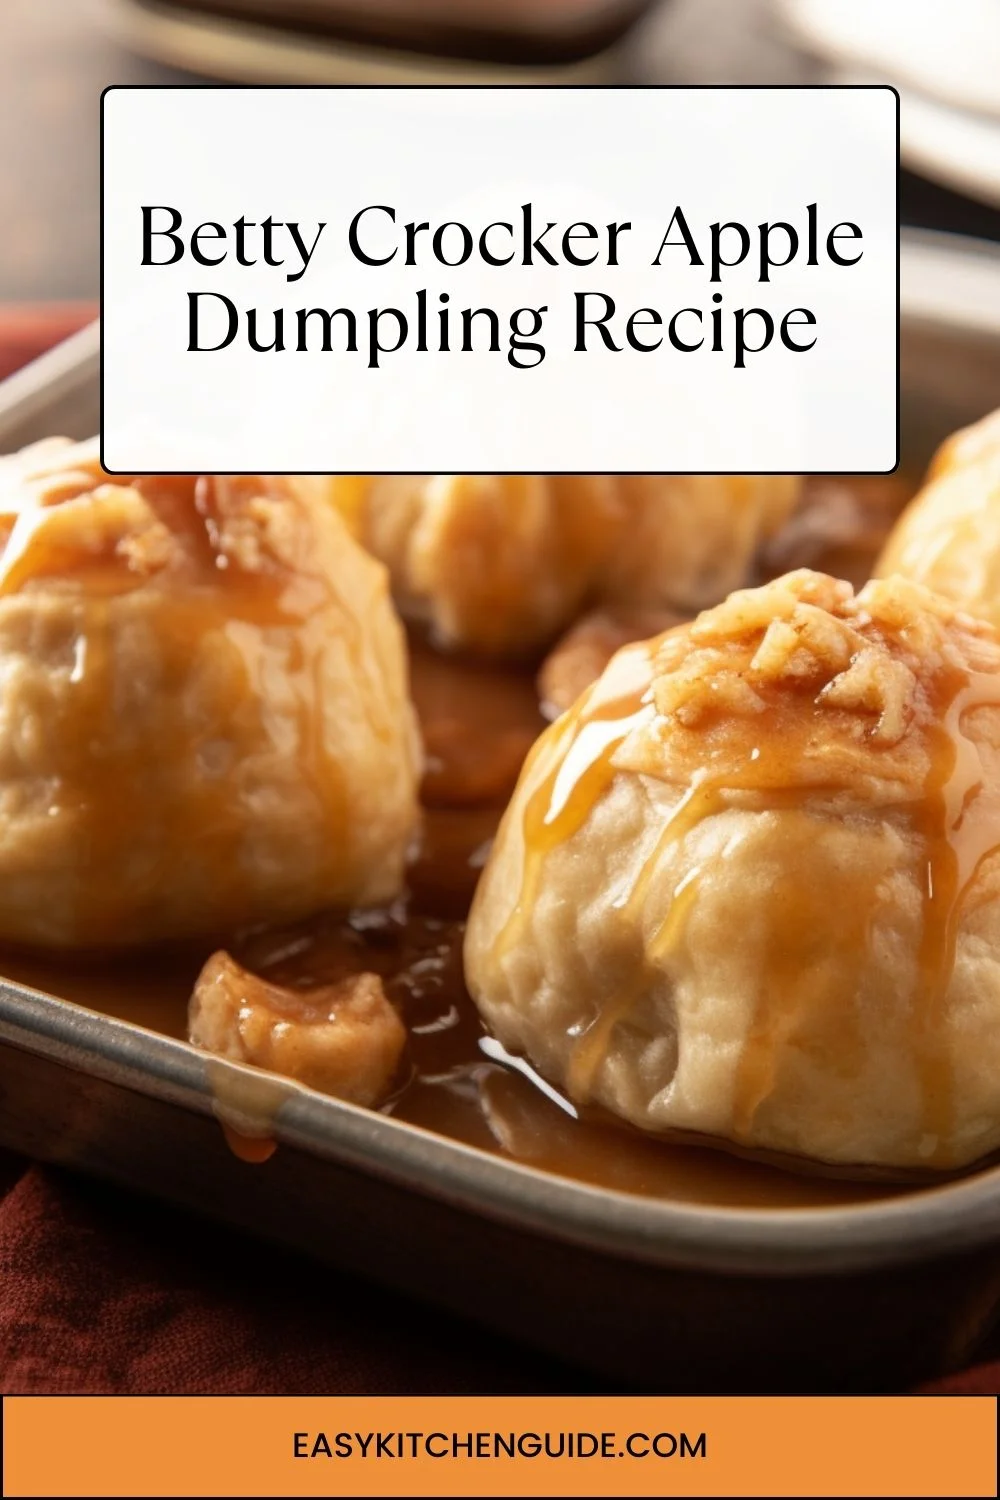 Betty Crocker Apple Dumpling Recipe.webp